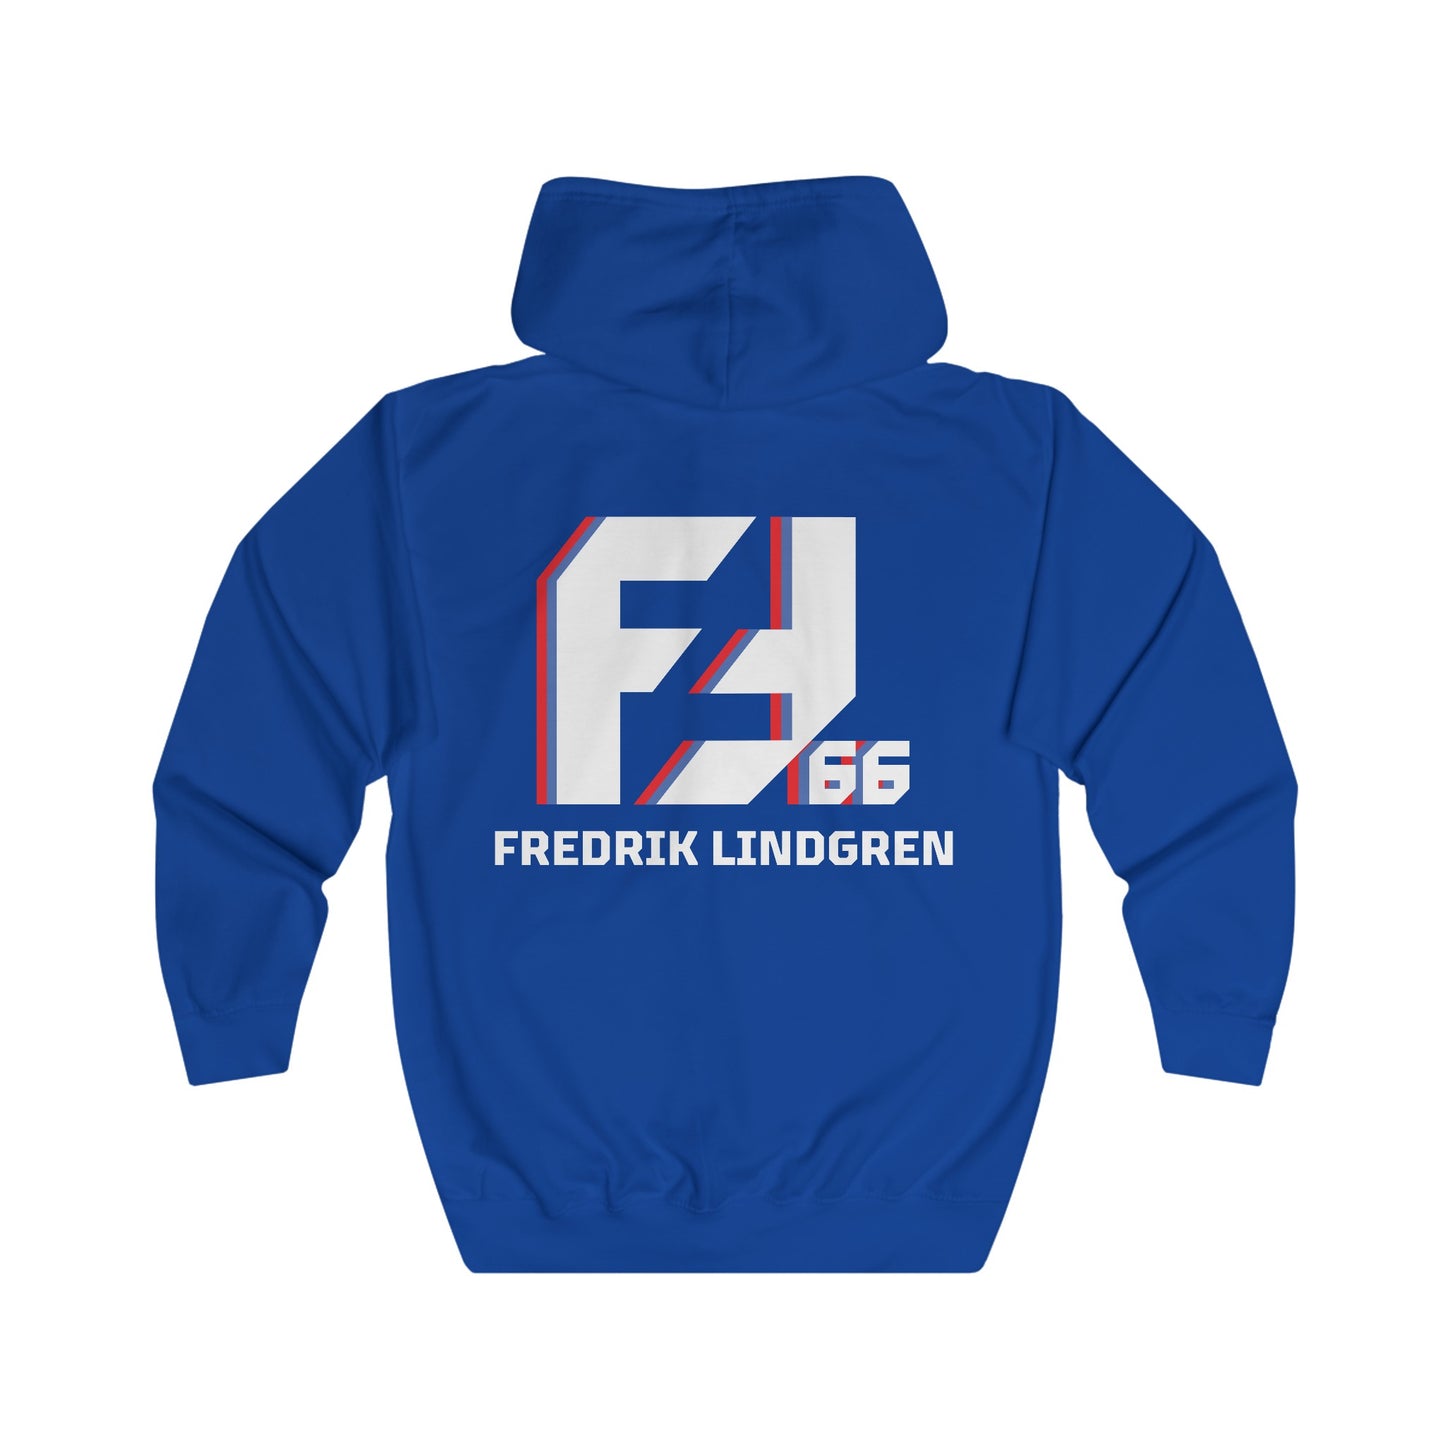 Fredrik Lindgren Navy Blue, Logos Hoddie Full Zip Hoodie